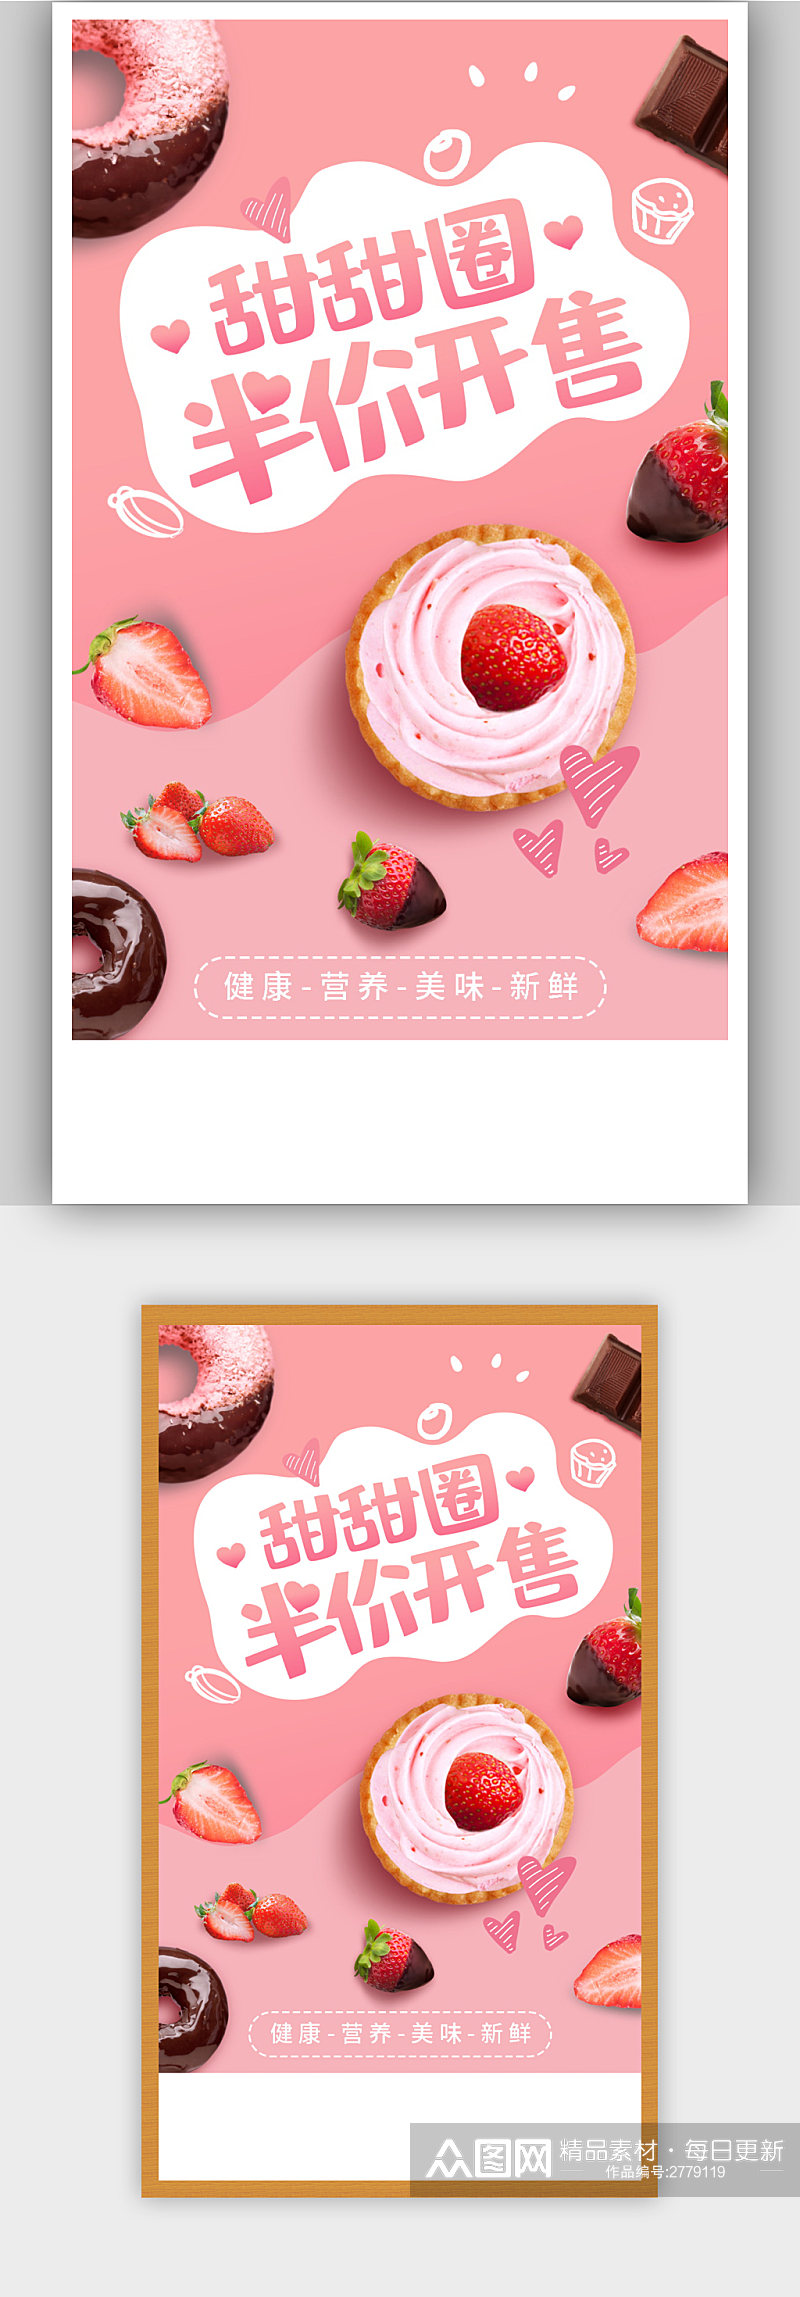 粉色可爱甜甜圈宣传促销海报素材